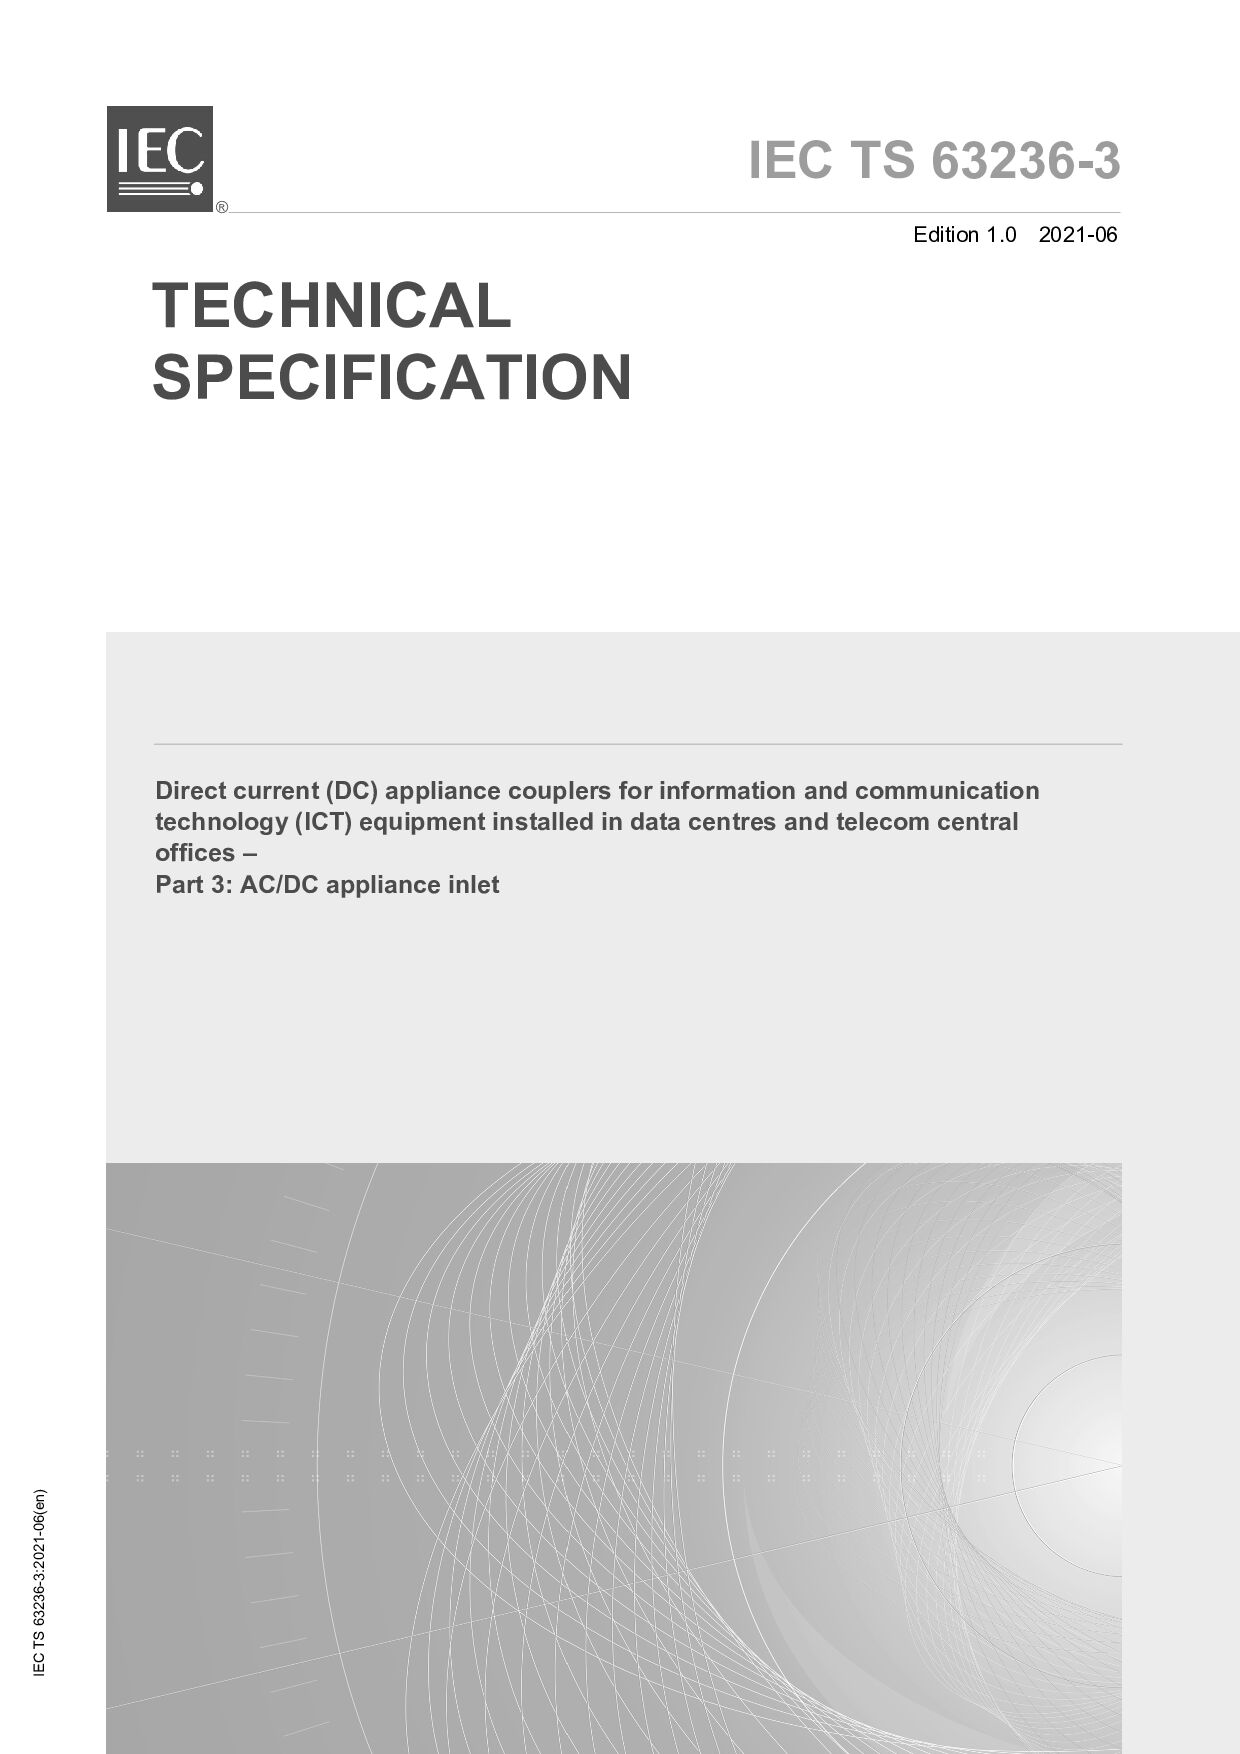 IEC TS 63236-3:2021